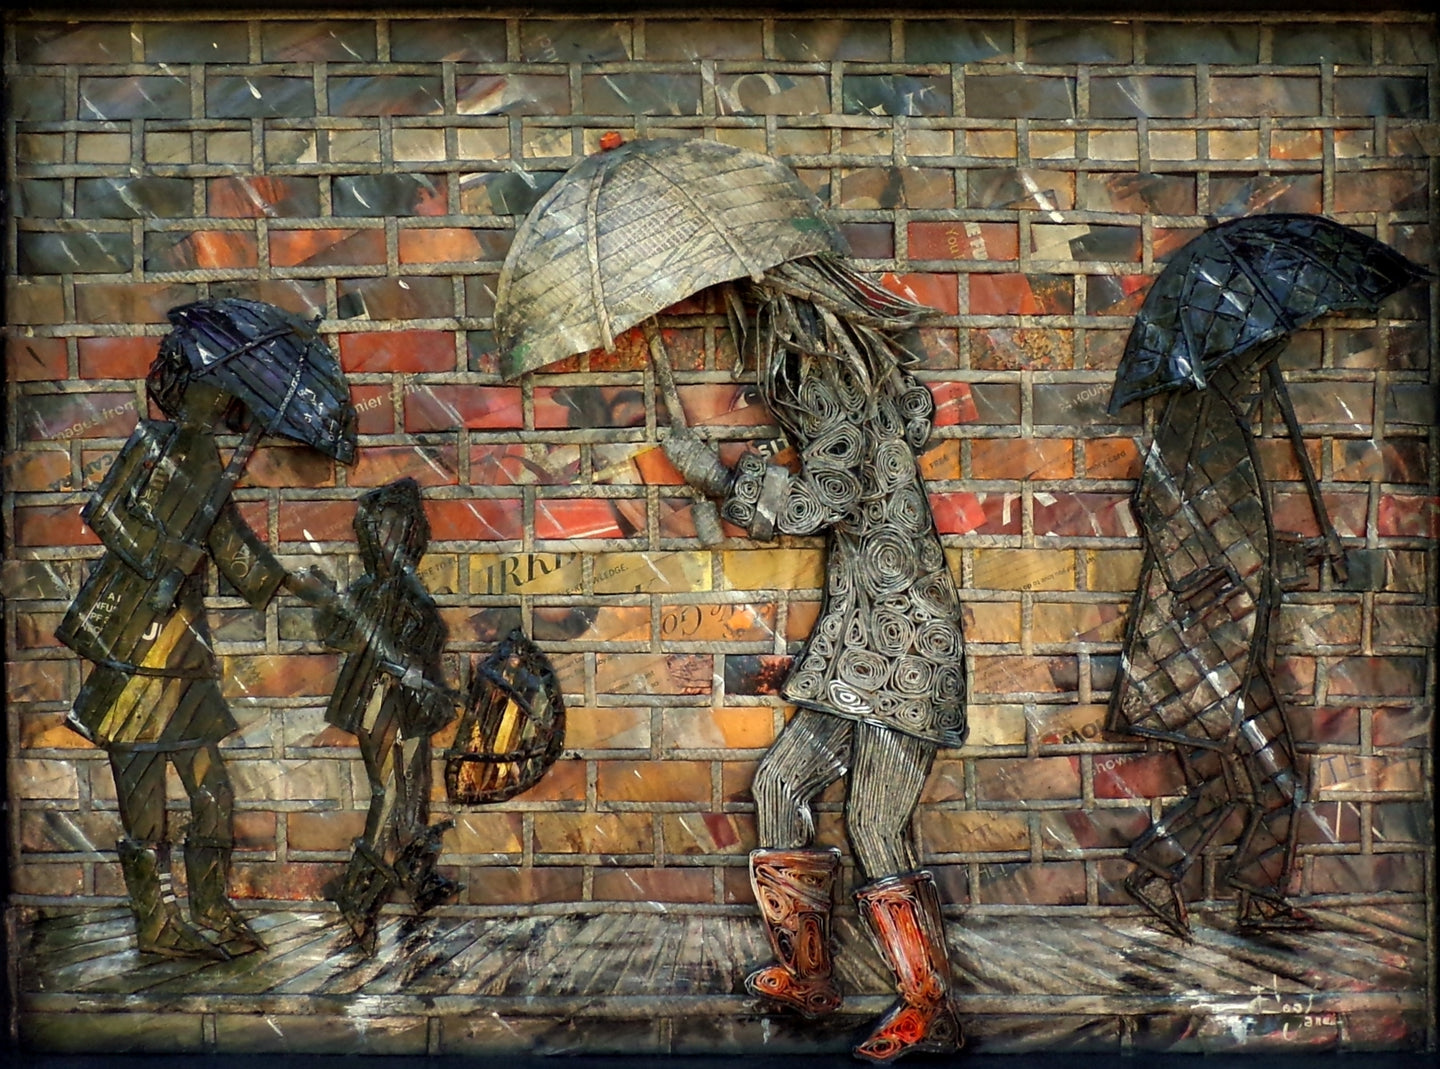 Rainy Day by Eloa Jane